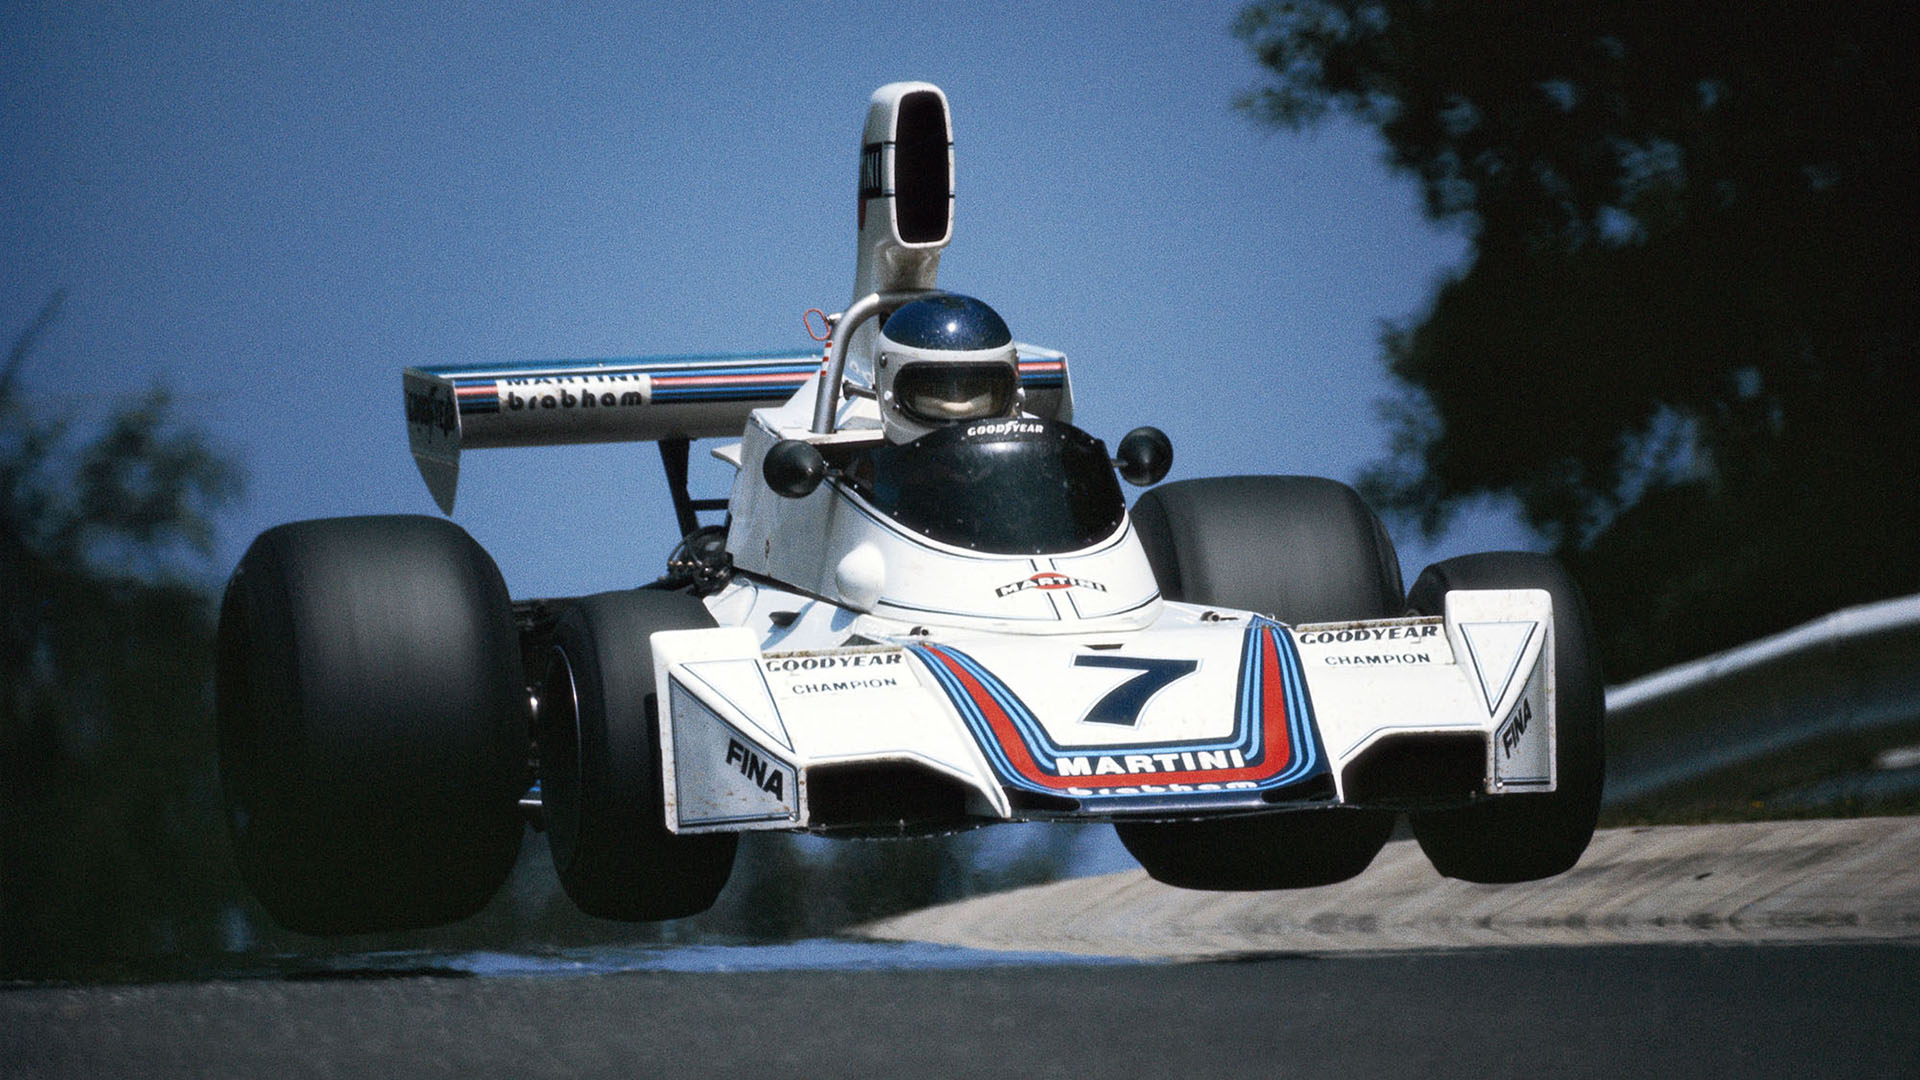 Volando con el Brabham en la pista más difícil del mundo, Nürburgring, donde Reutemann ganó en 1975 (foto Alejandro de Brito)